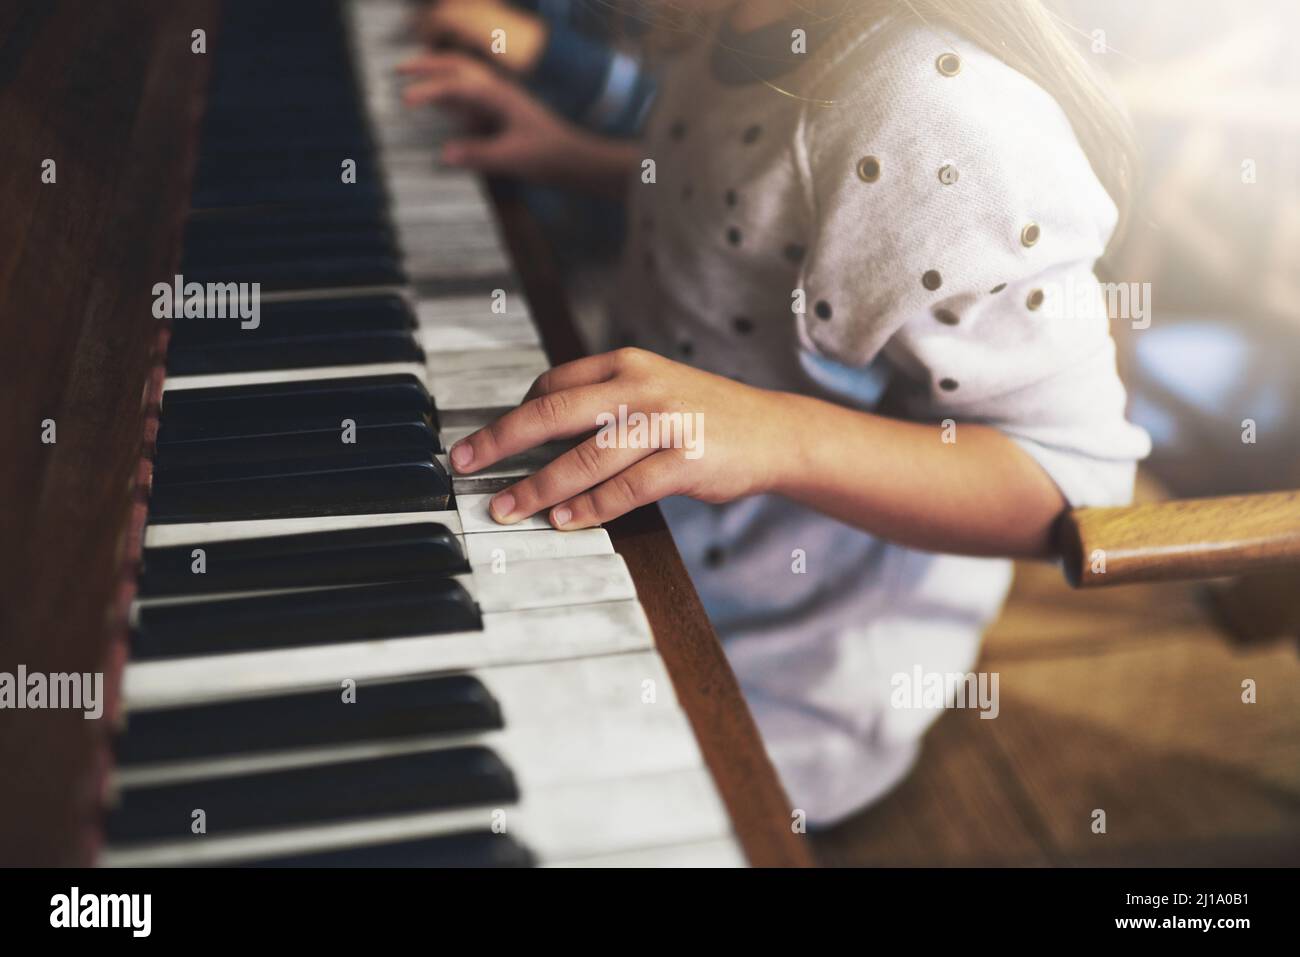 Klaviere erschließen die Schlüssel zum Talent im Kindesalter. Eine kleine Aufnahme eines kleinen Mädchens, das Klavier spielt. Stockfoto